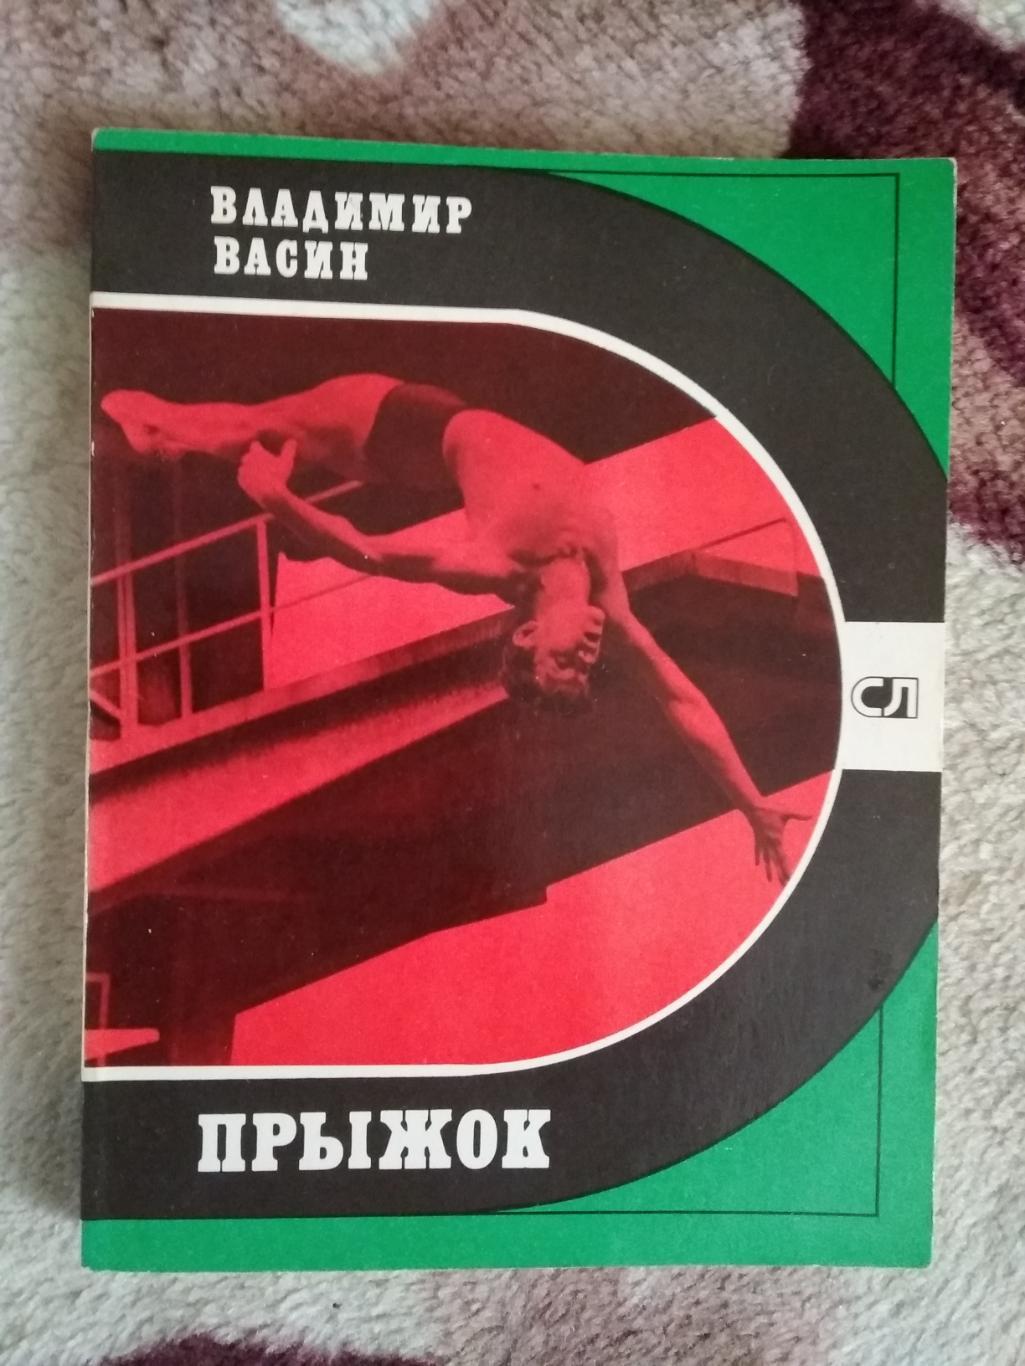 В.Васин.Прыжок.Серия Спорт и личность.Мол.гвардия 1980.